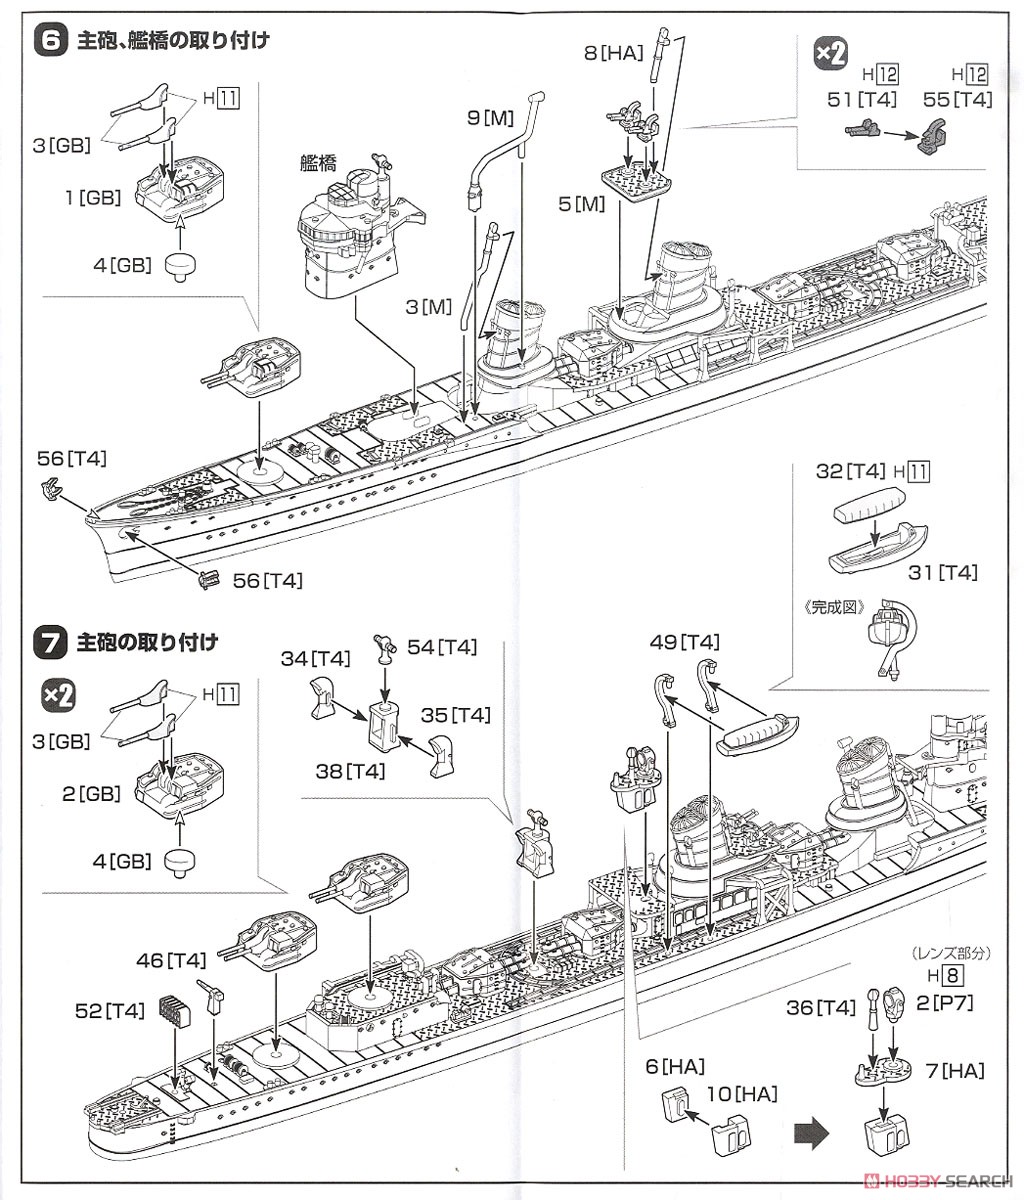 特型駆逐艦II型 狭霧 (プラモデル) 設計図3